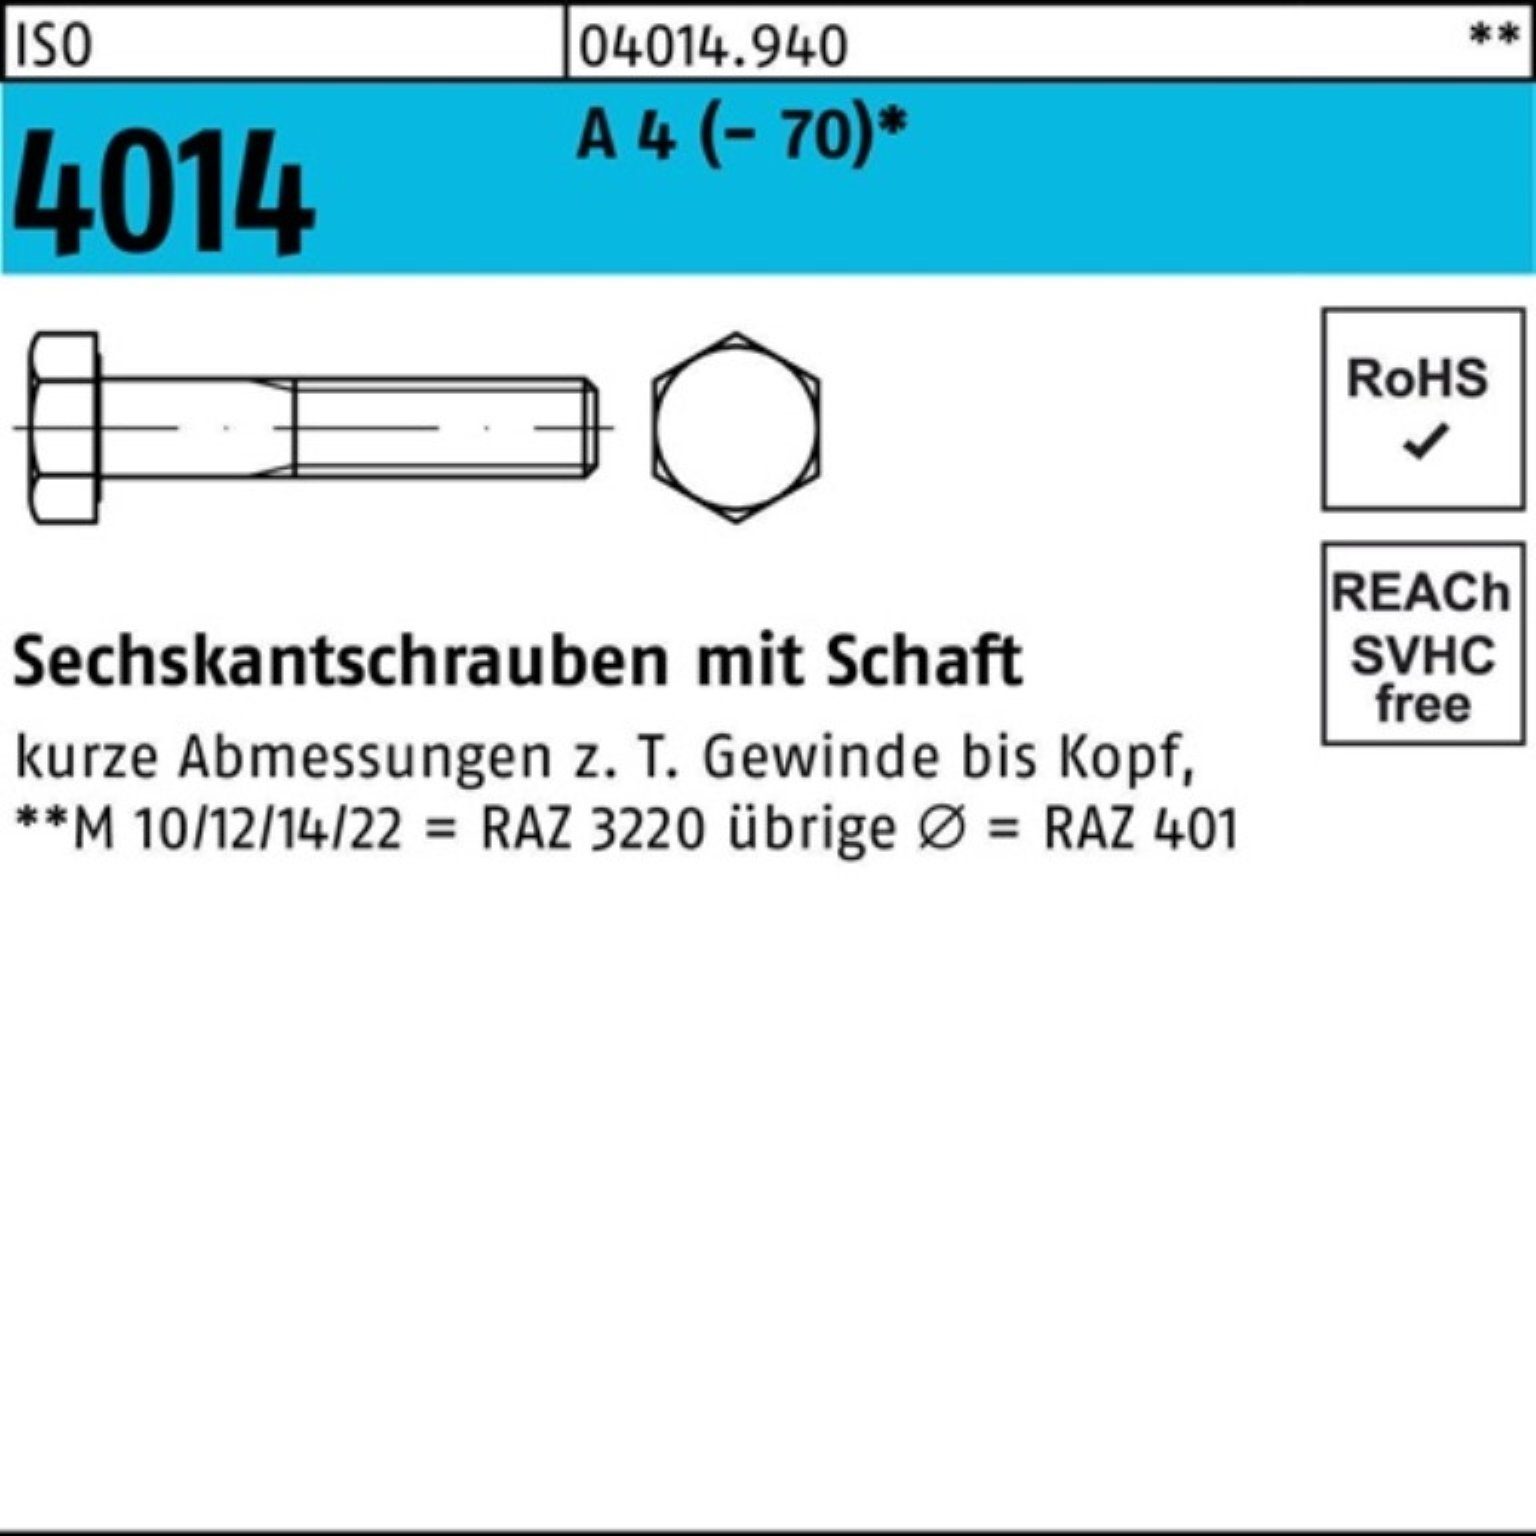 Schaft Sechskantschraube 80 (70) 4 M16x A ISO St Sechskantschraube Bufab Pack 100er 25 4014